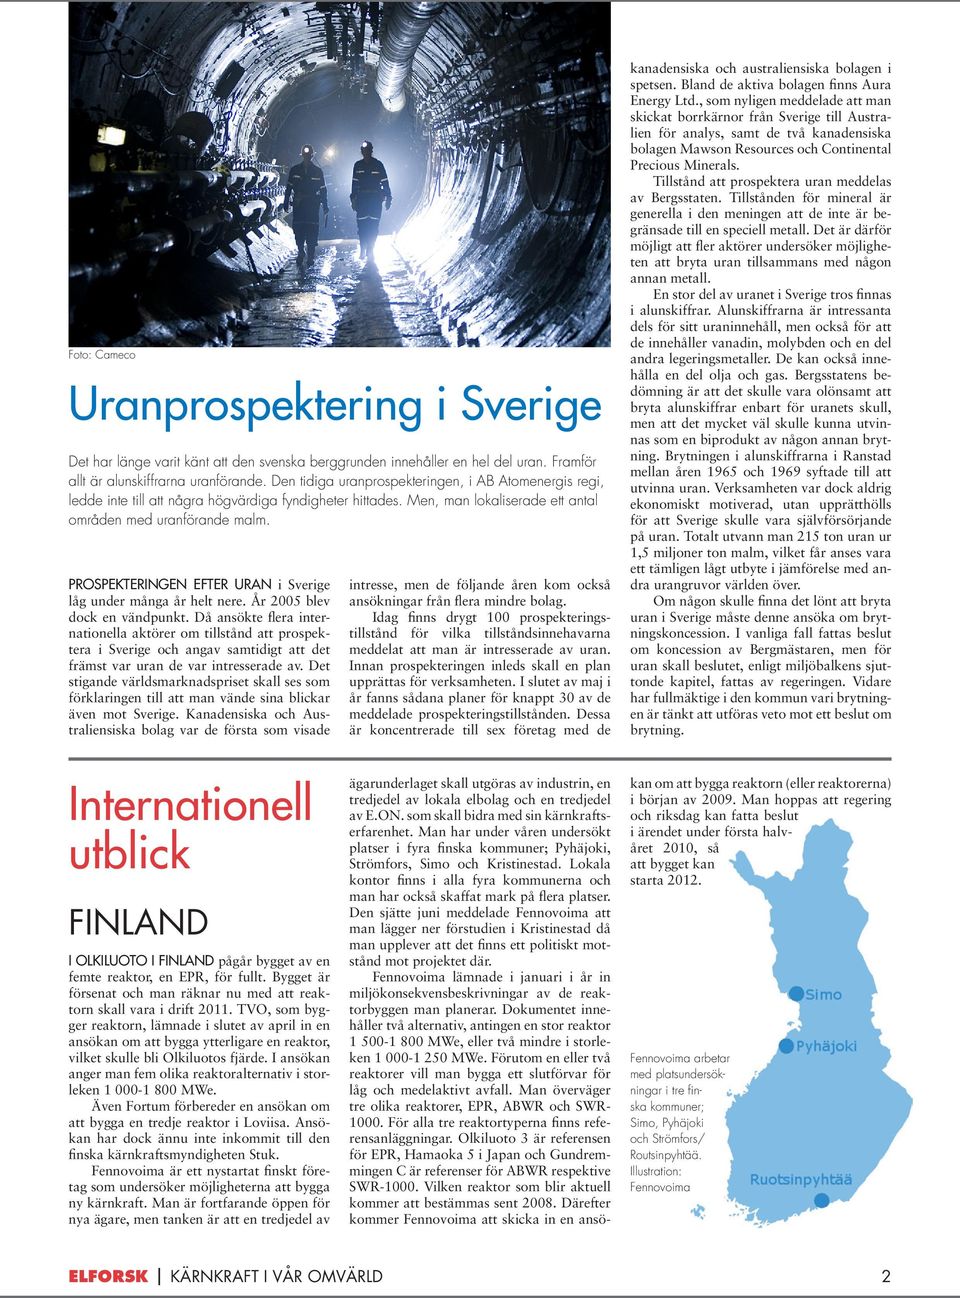 Prospekteringen efter uran i Sverige låg under många år helt nere. År 2005 blev dock en vändpunkt.